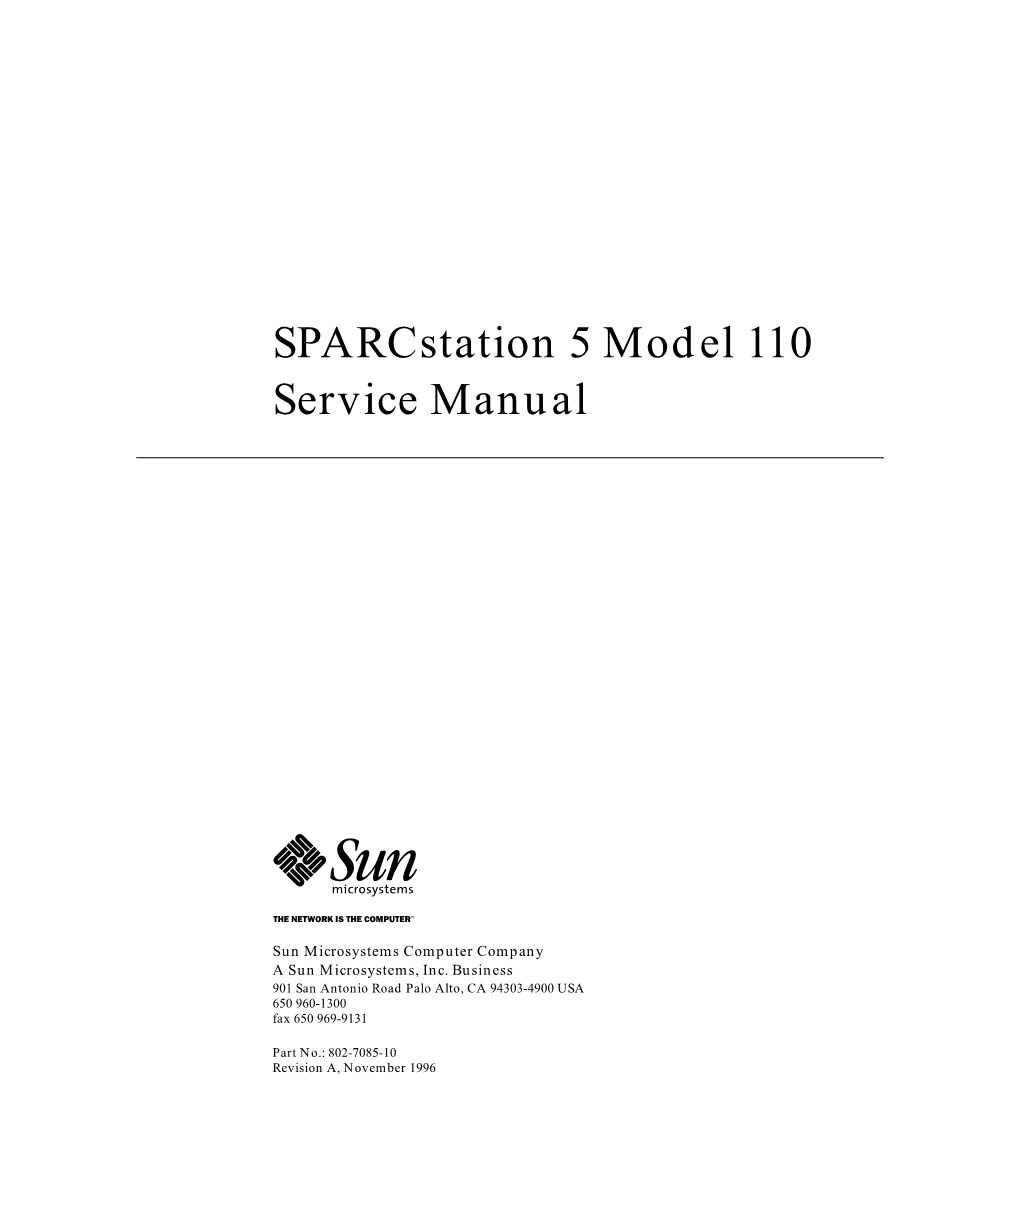 Sparcstation 5 Model 110 Service Manual